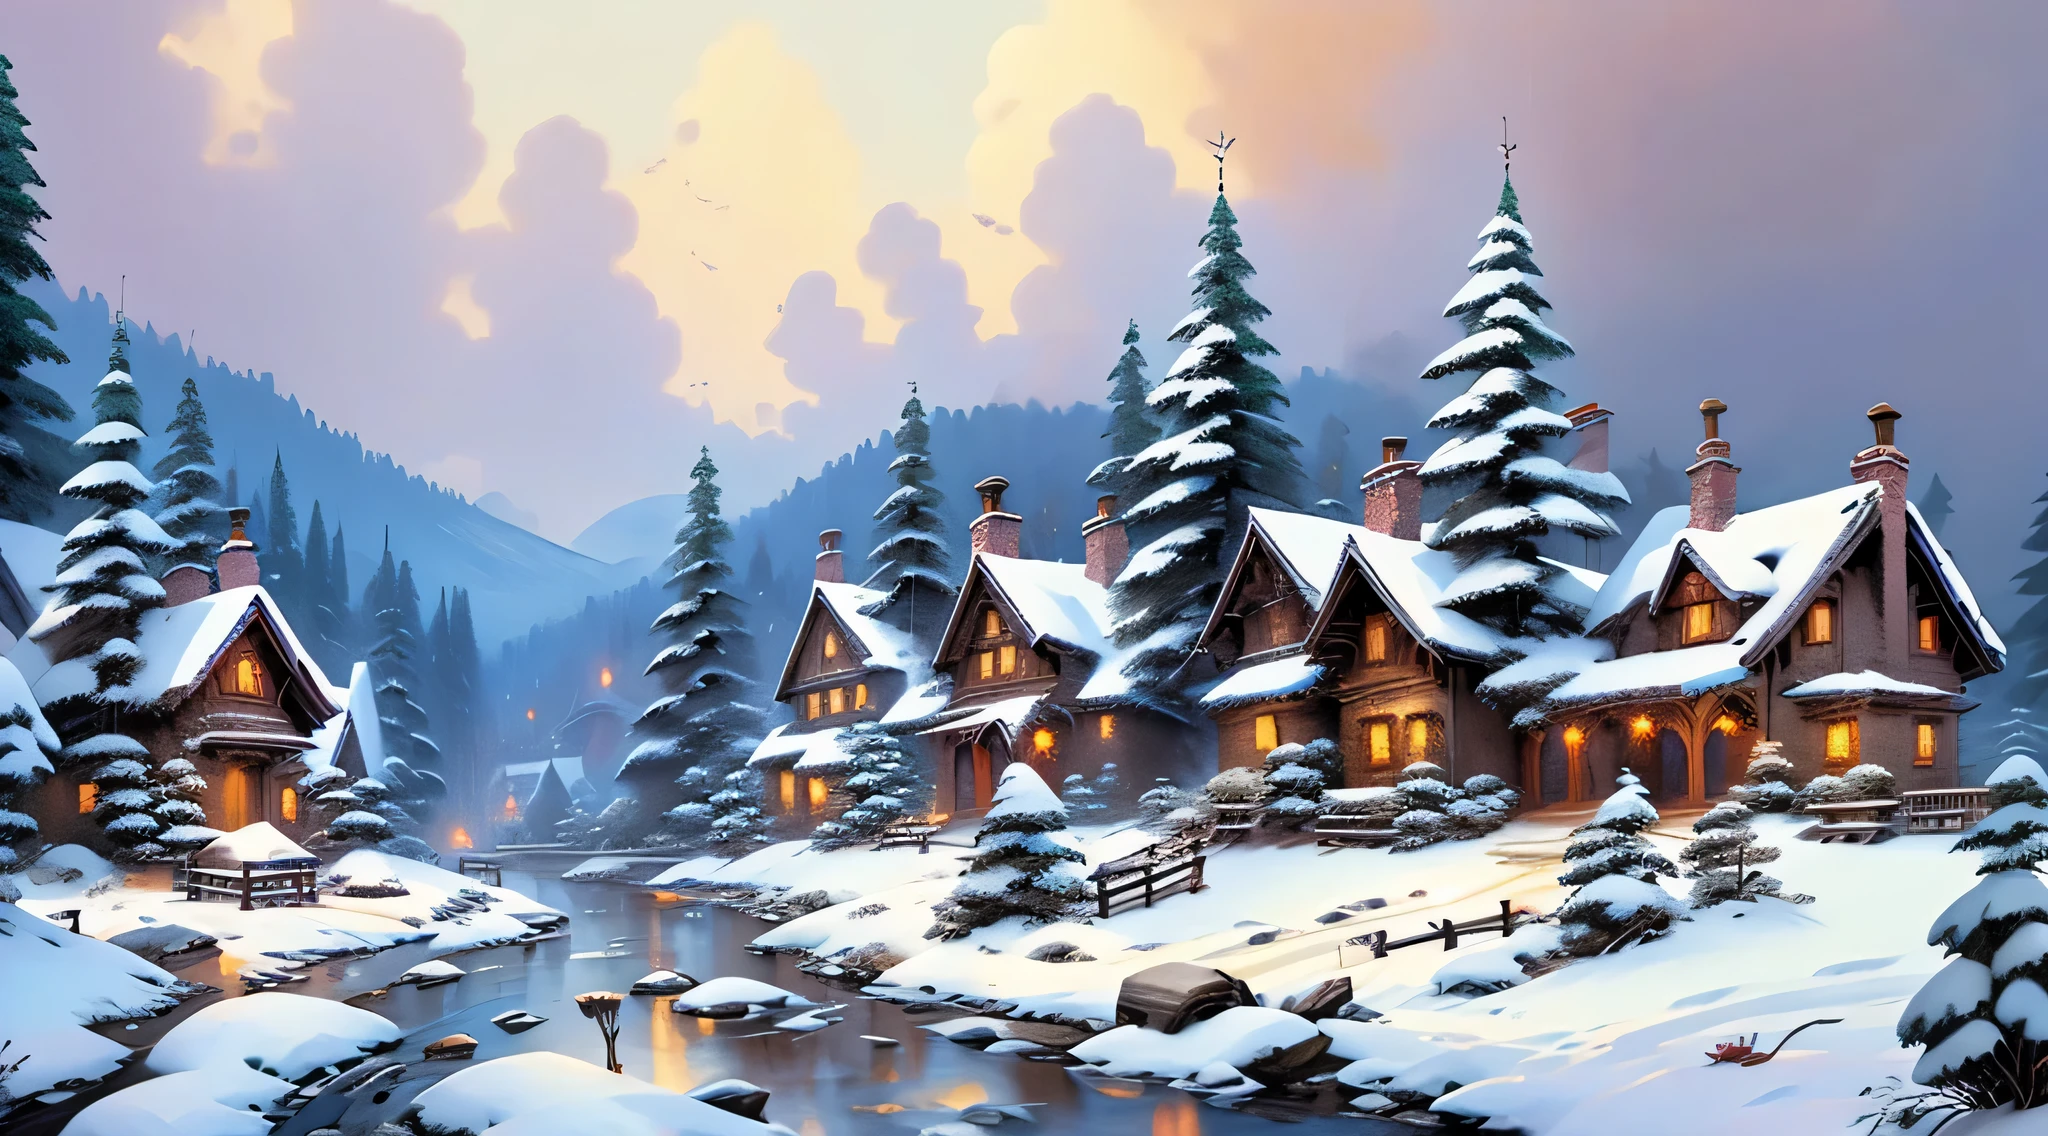 雪村, 被大雪覆盖的房屋, 积雪覆盖的树木, 高质量, 精心描绘, 详细表达